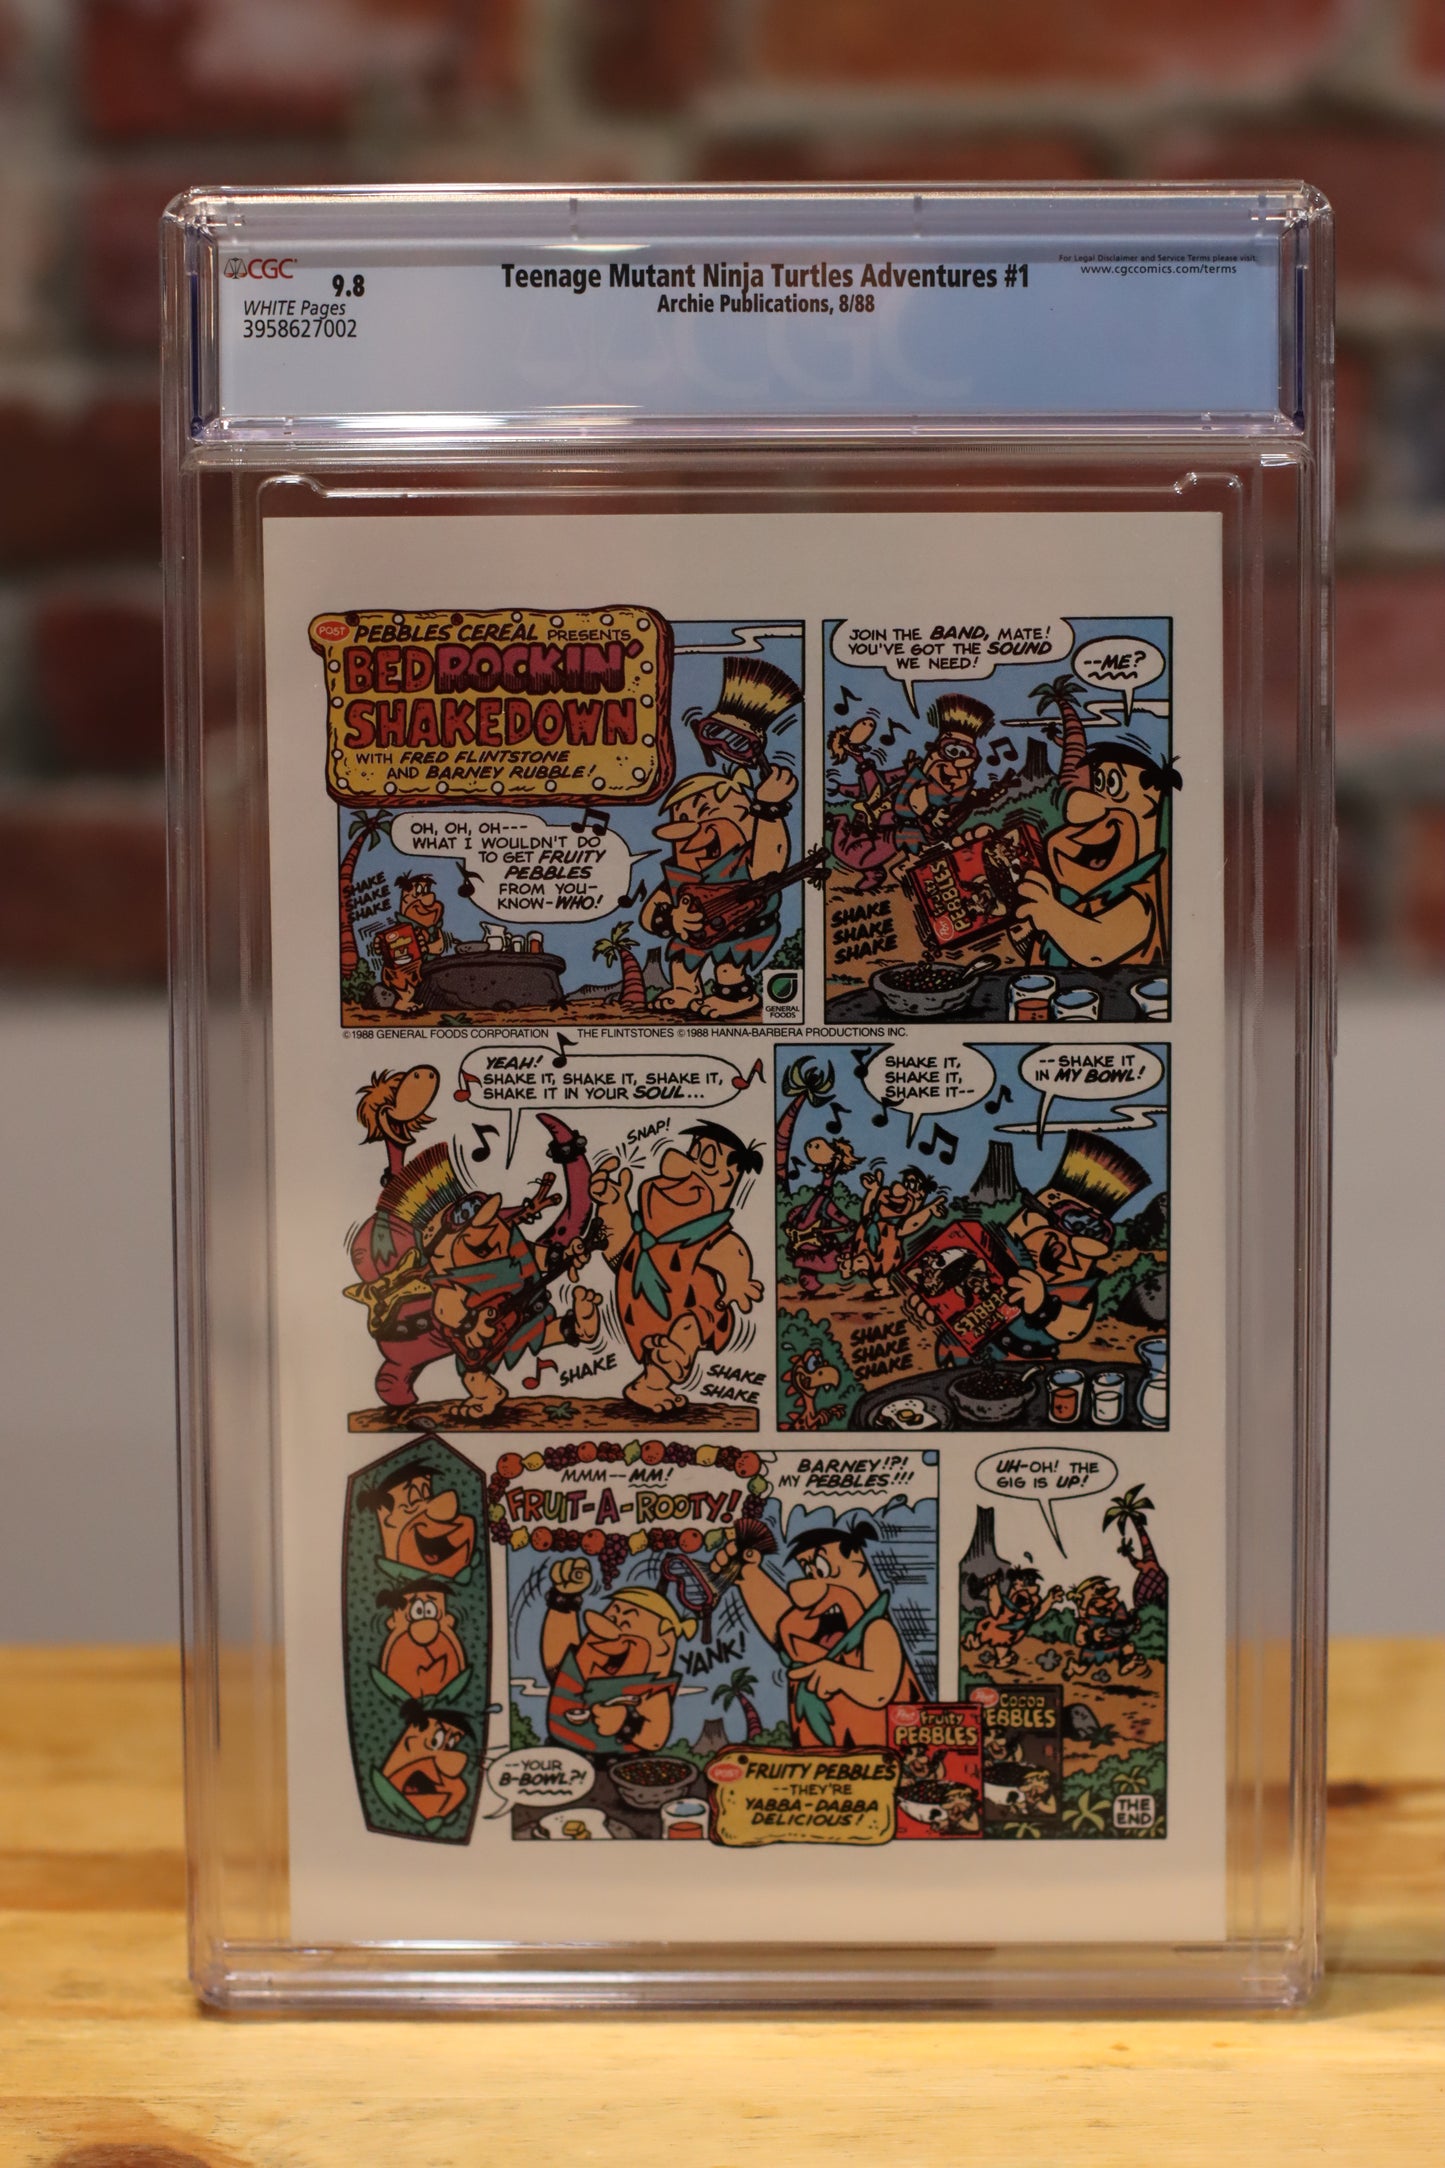 TMNT: Teenage Mutant Ninja Turtles Adventures Graded Comic Book (Archie Publications 1988) CGC 9.8